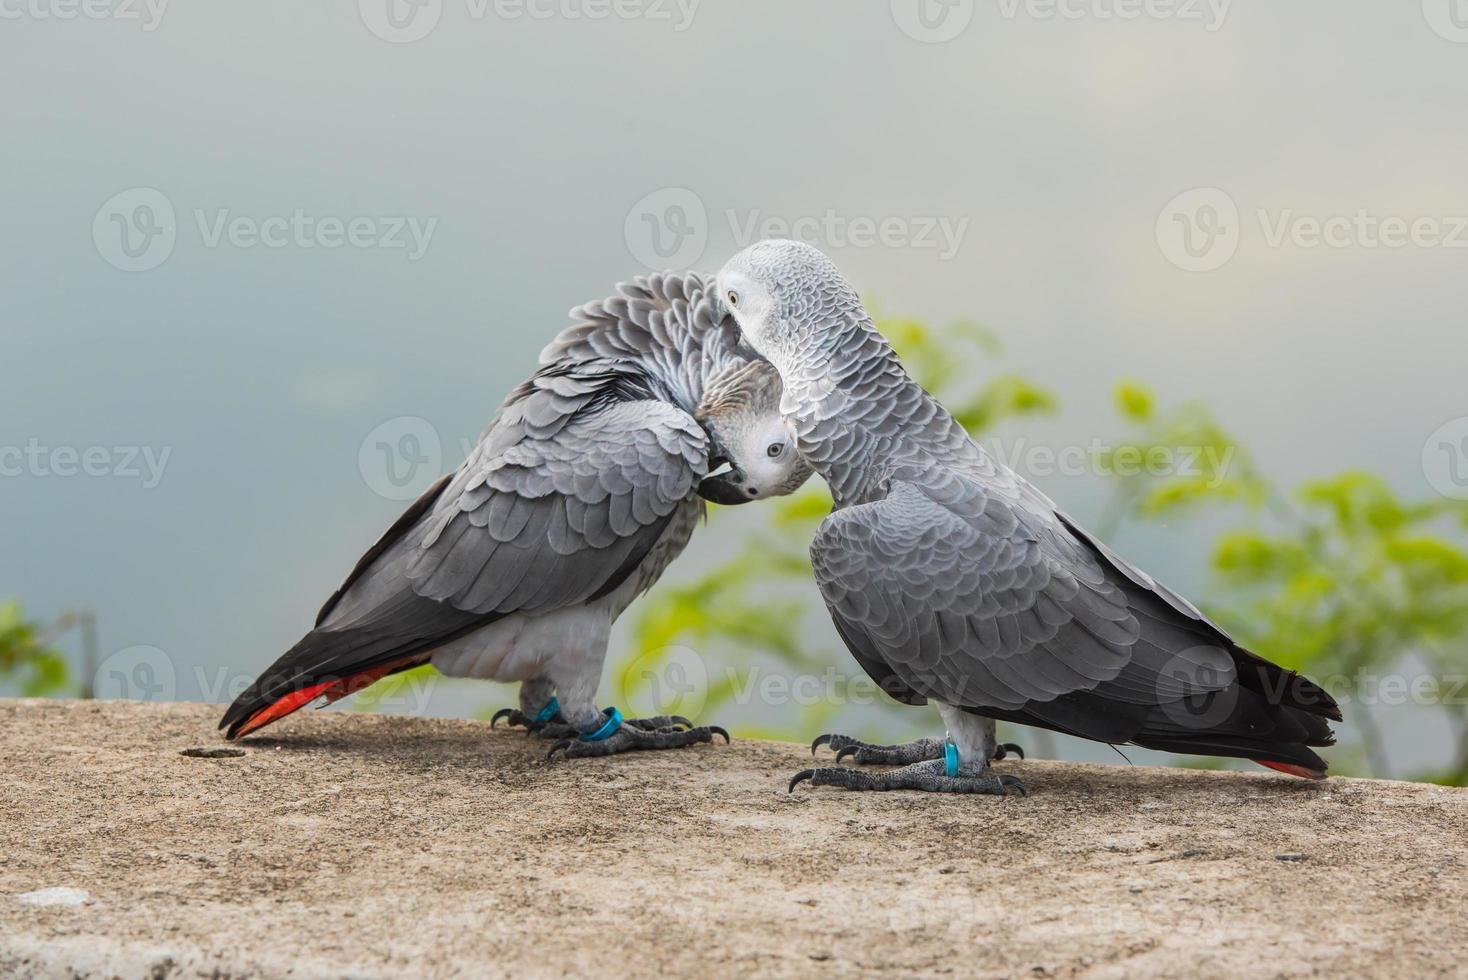 dois papagaios ou pássaros apaixonados se beijam, amor de papagaio, papagaio cinza africano sentado e conversando com emoção de amor. foto